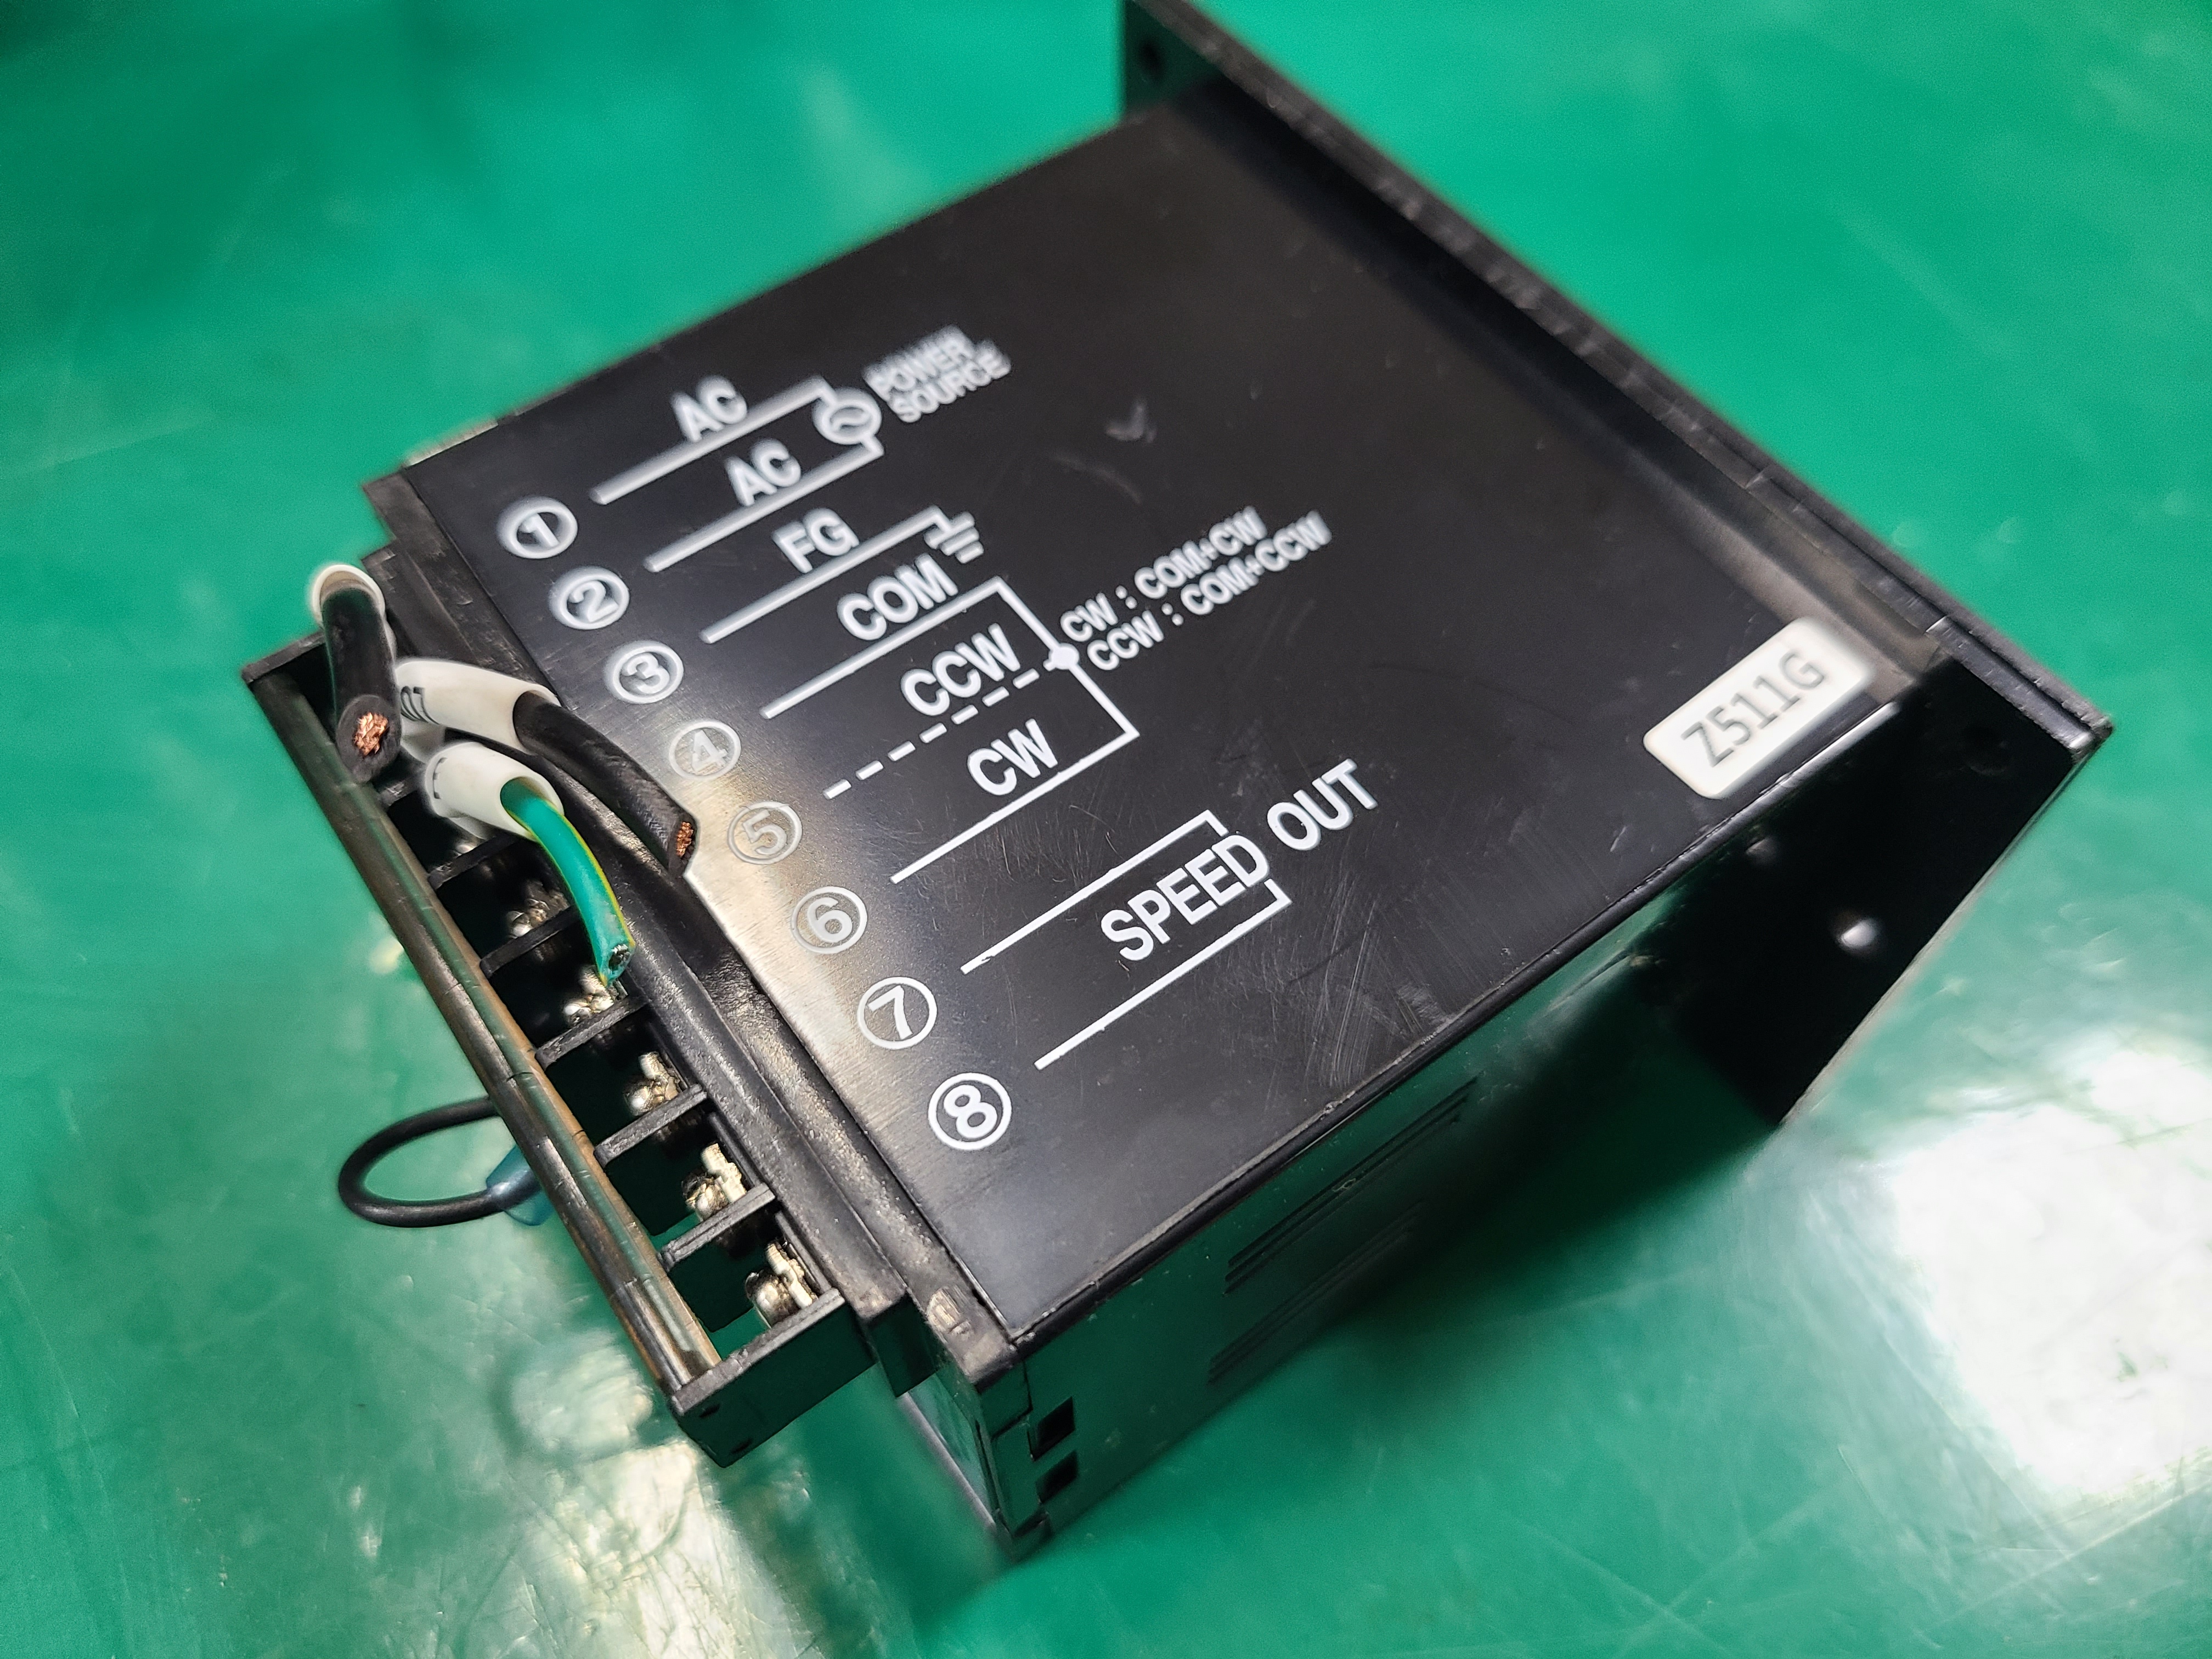 (미사용중고)SPG SPEED CONTROLLER SUA60IB-V12(60W) 스피드 콘트롤러